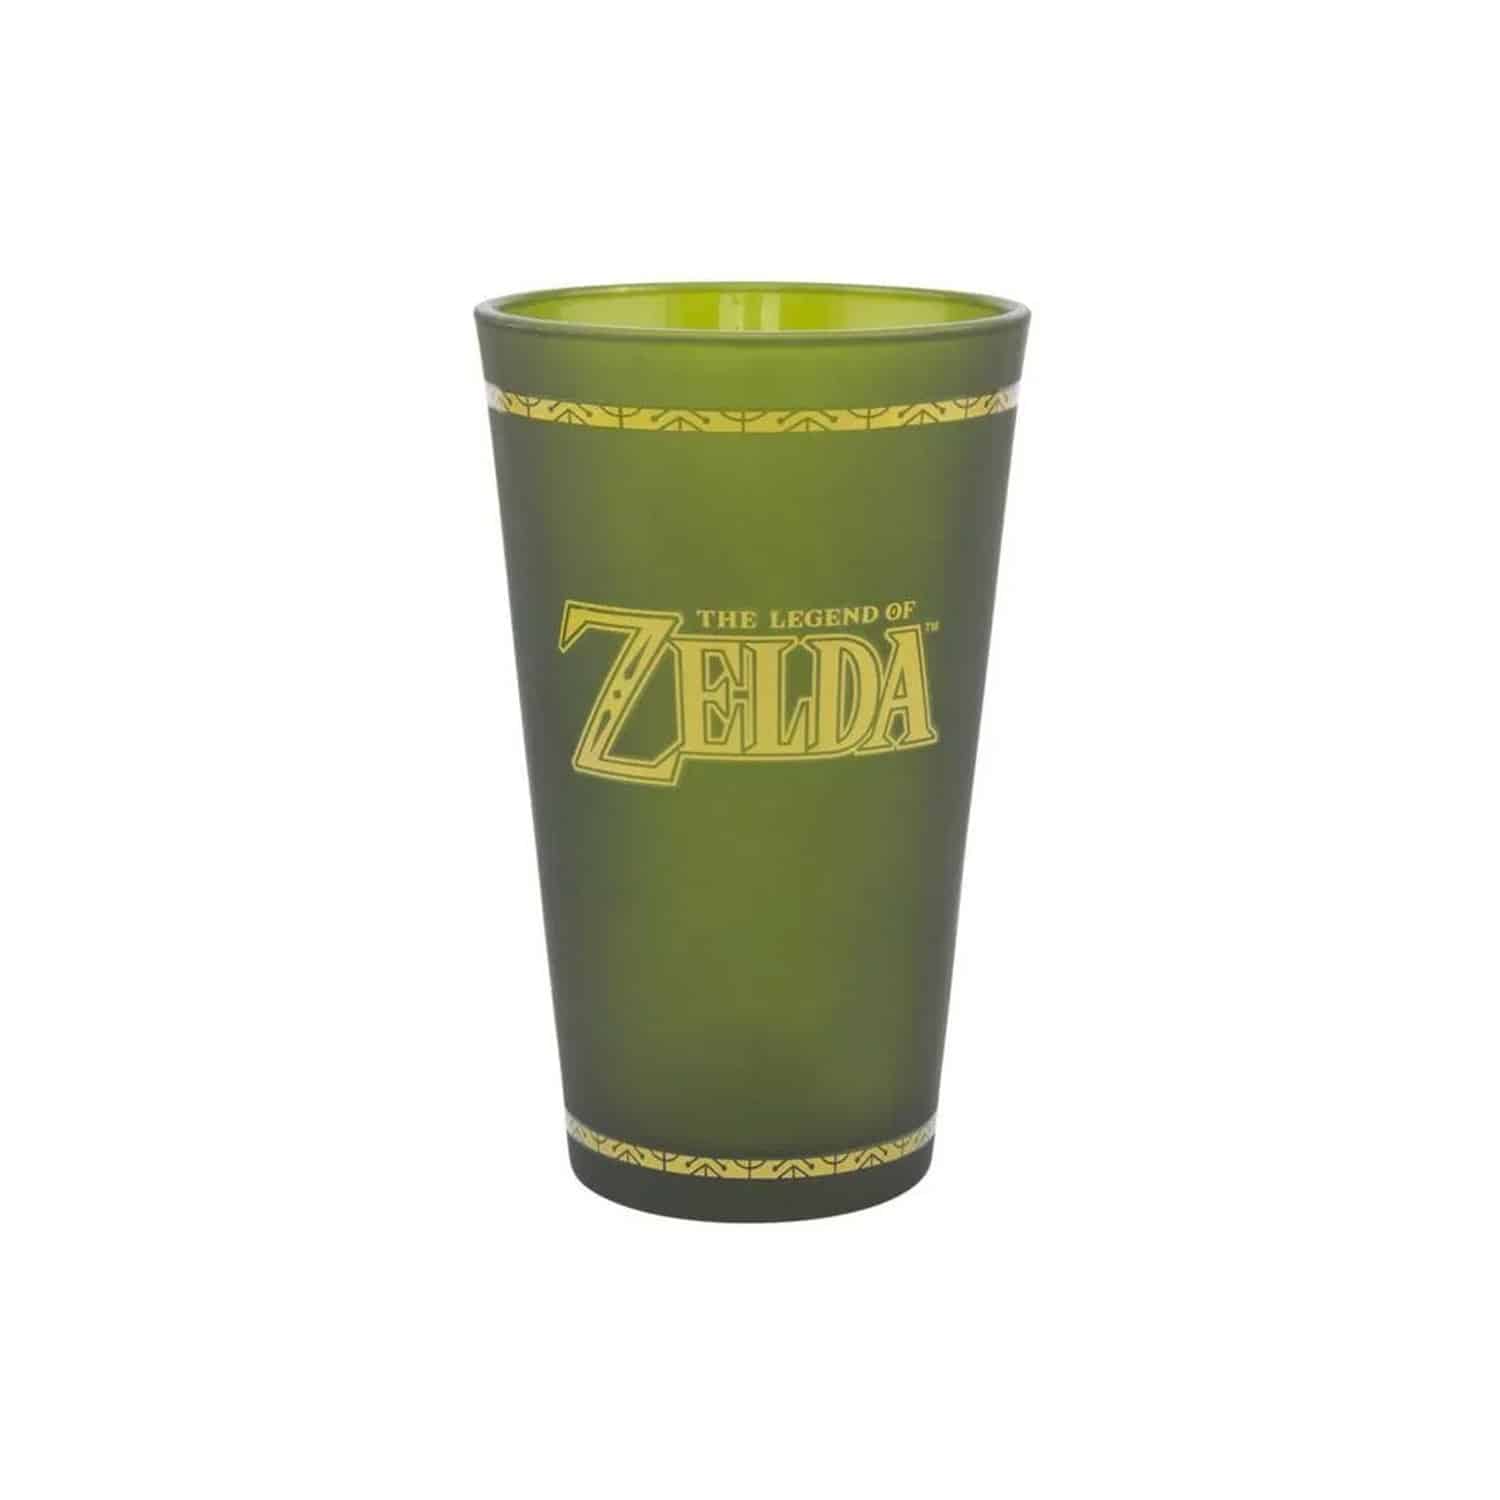 The Legend of Zelda - Hyrule Crest Glass